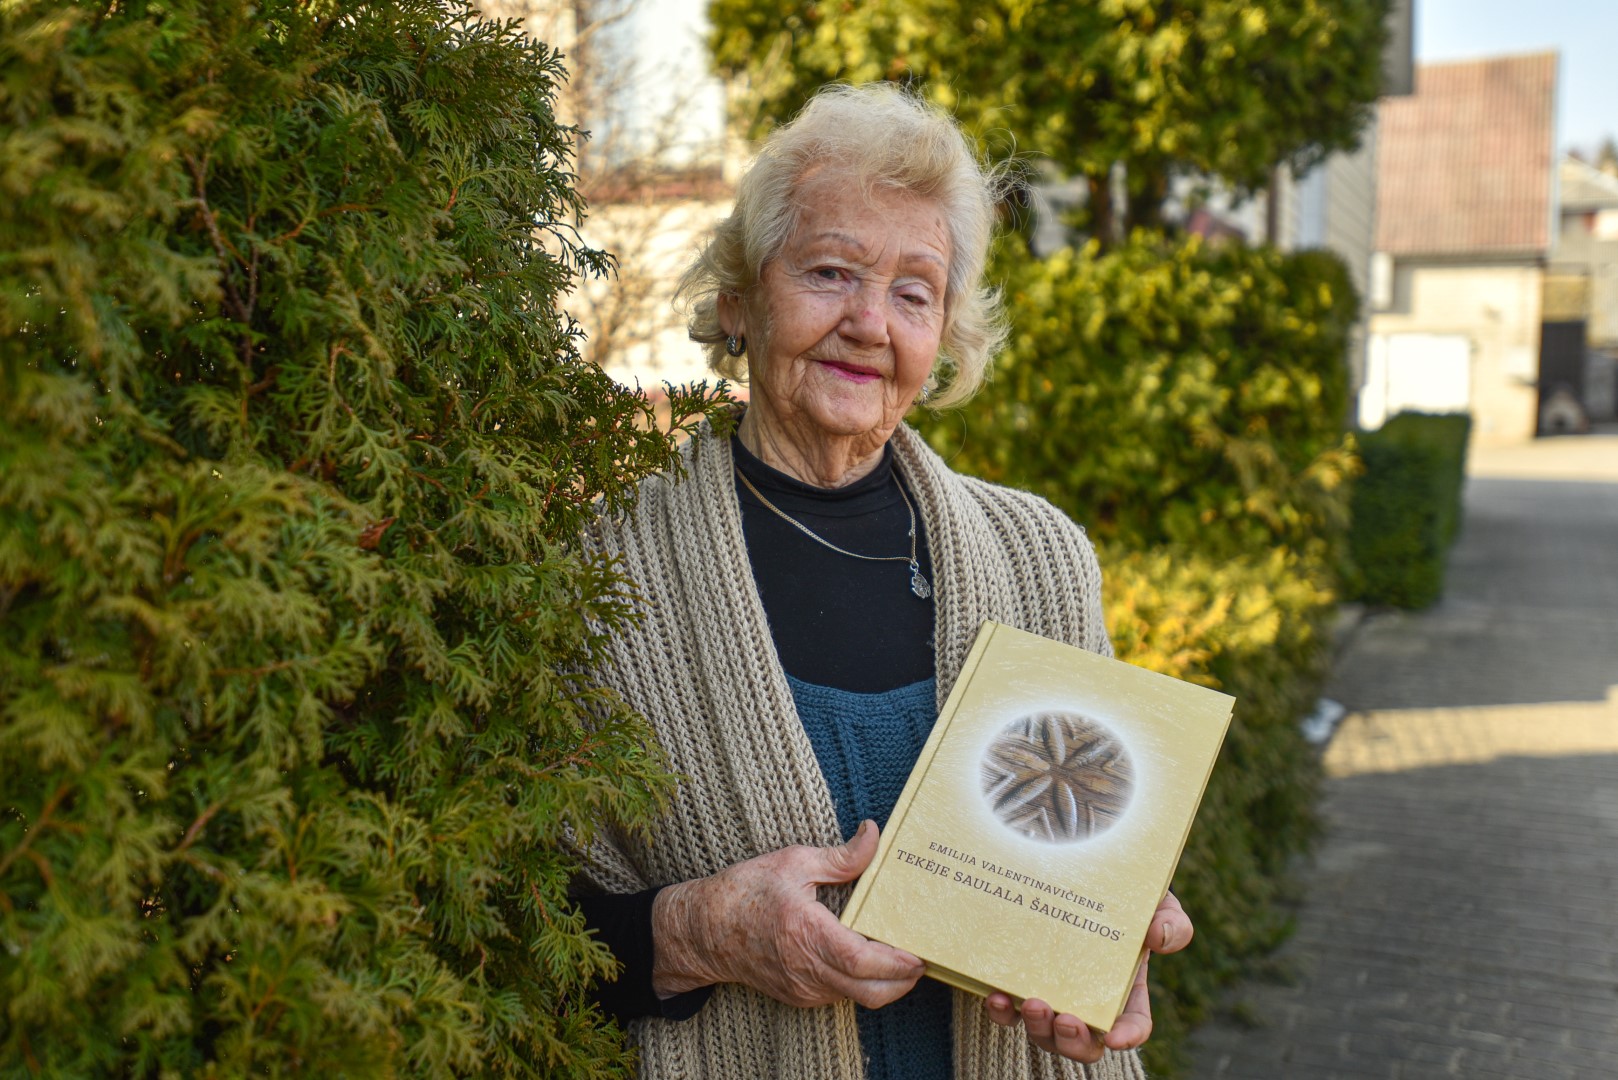 Panevėžio priemiestyje, Piniavoje, gyvenanti poetė ir rašytoja 81-erių Emilija Valentinavičienė į skaitytoją prabilo šiaurės panevėžiškių, vadinamųjų pontininkų – viena didžiausių ir sudėtingiausių rytų aukštaičių patarme.